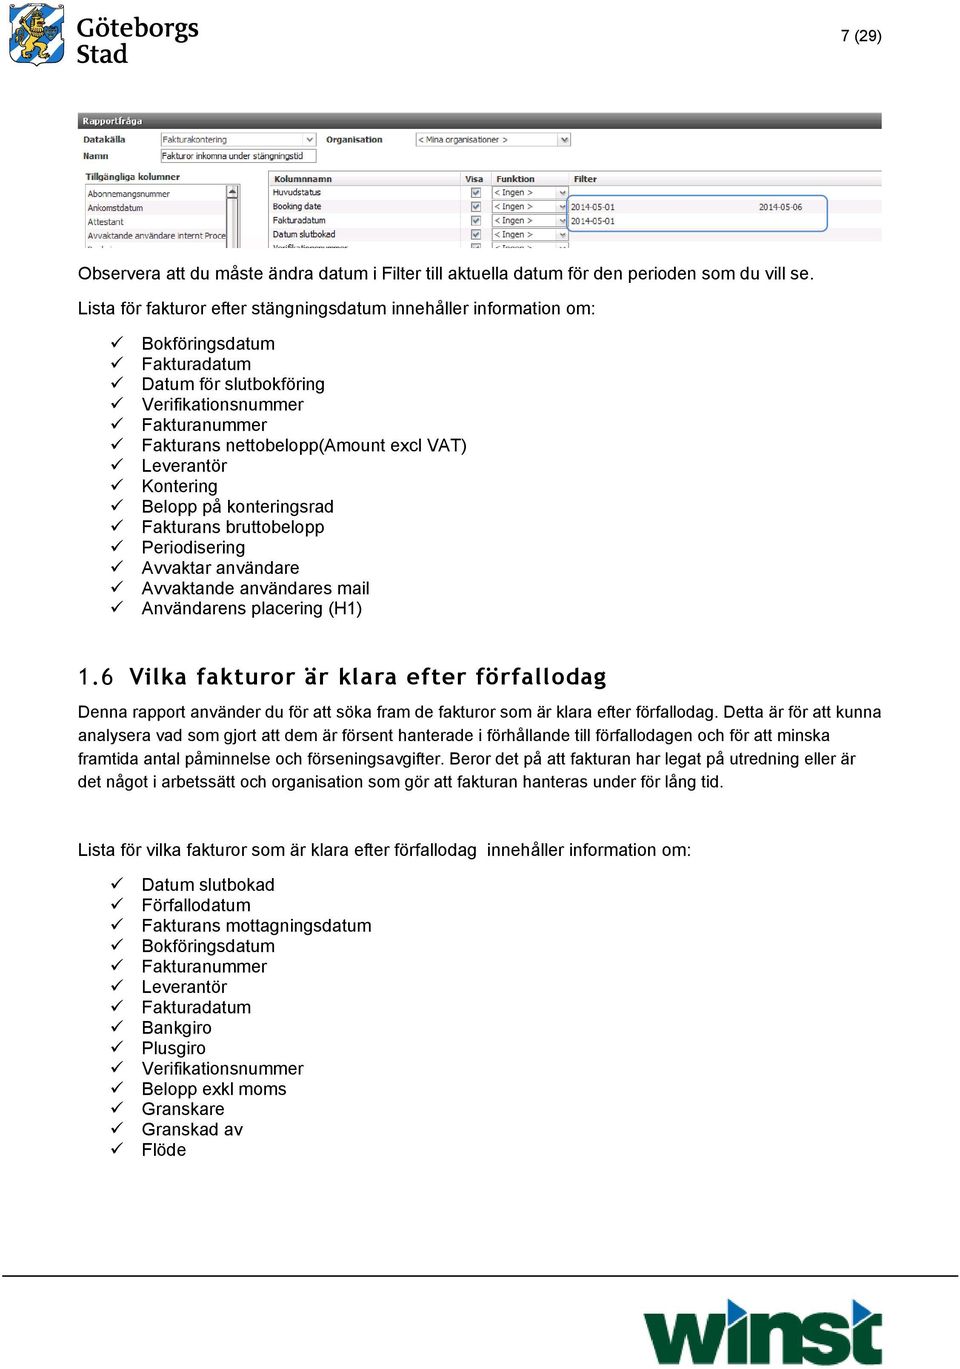 Leverantör Kontering Belopp på konteringsrad Fakturans bruttobelopp Periodisering Avvaktar användare Avvaktande användares mail Användarens placering (H1) 1.